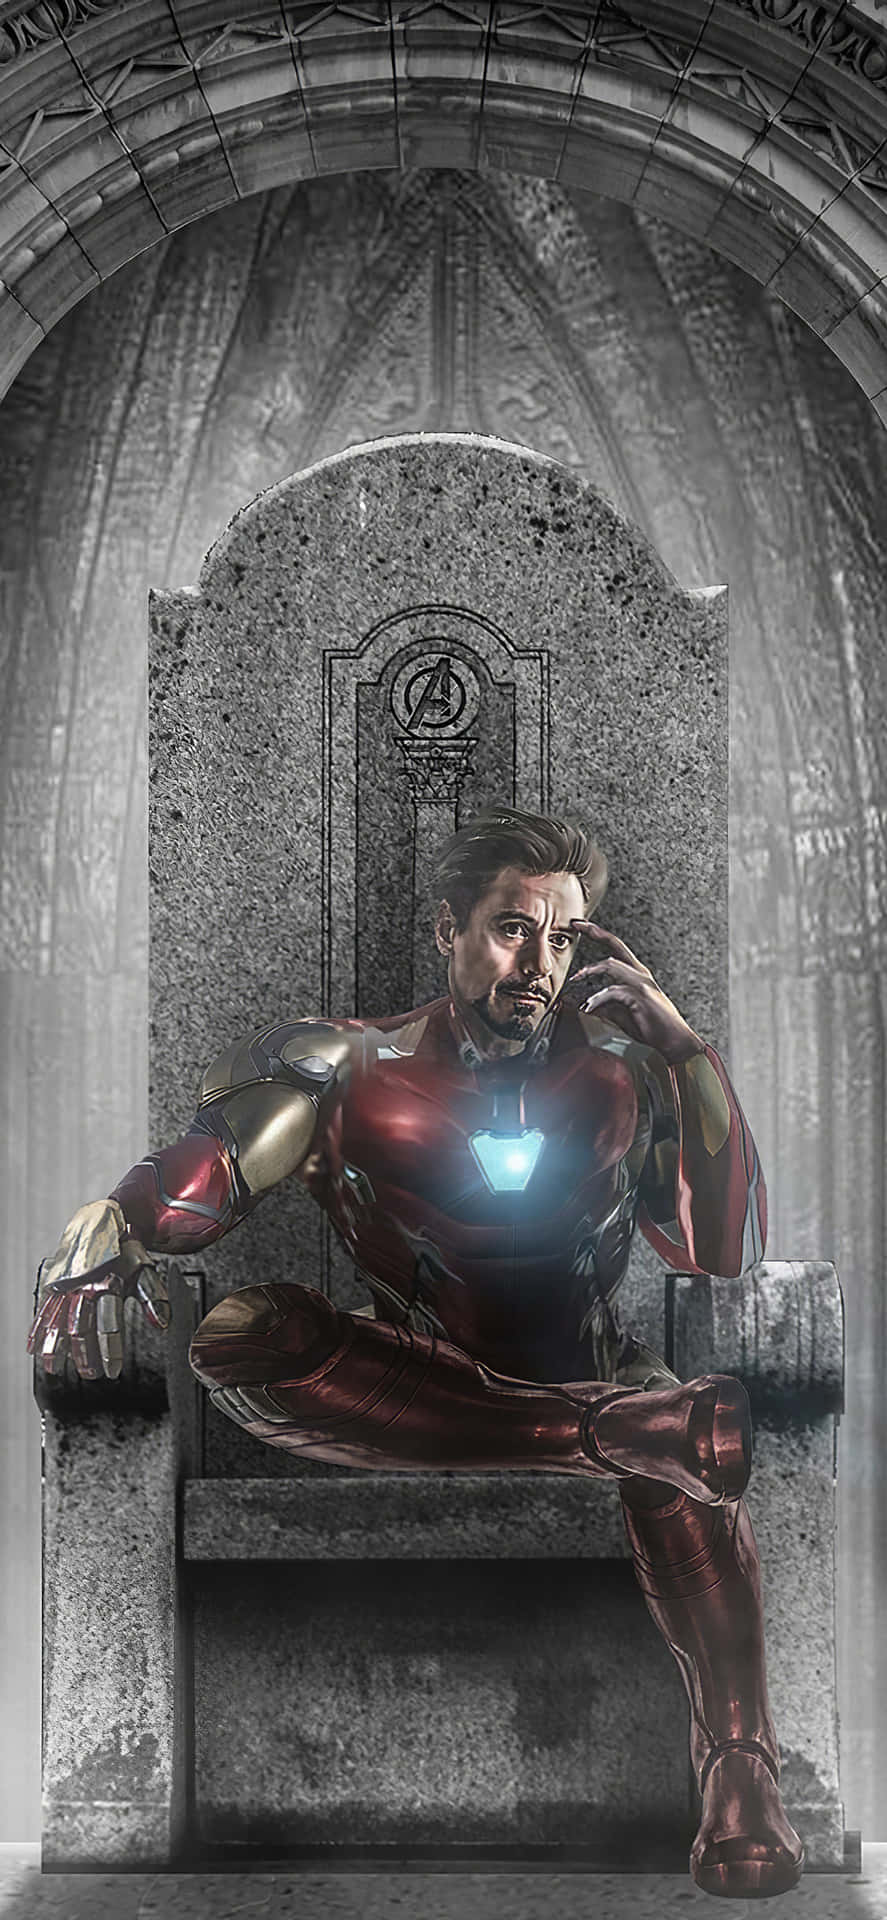 Fondode Pantalla De Iron Man Para Iphone X, Iron Man En Su Trono.